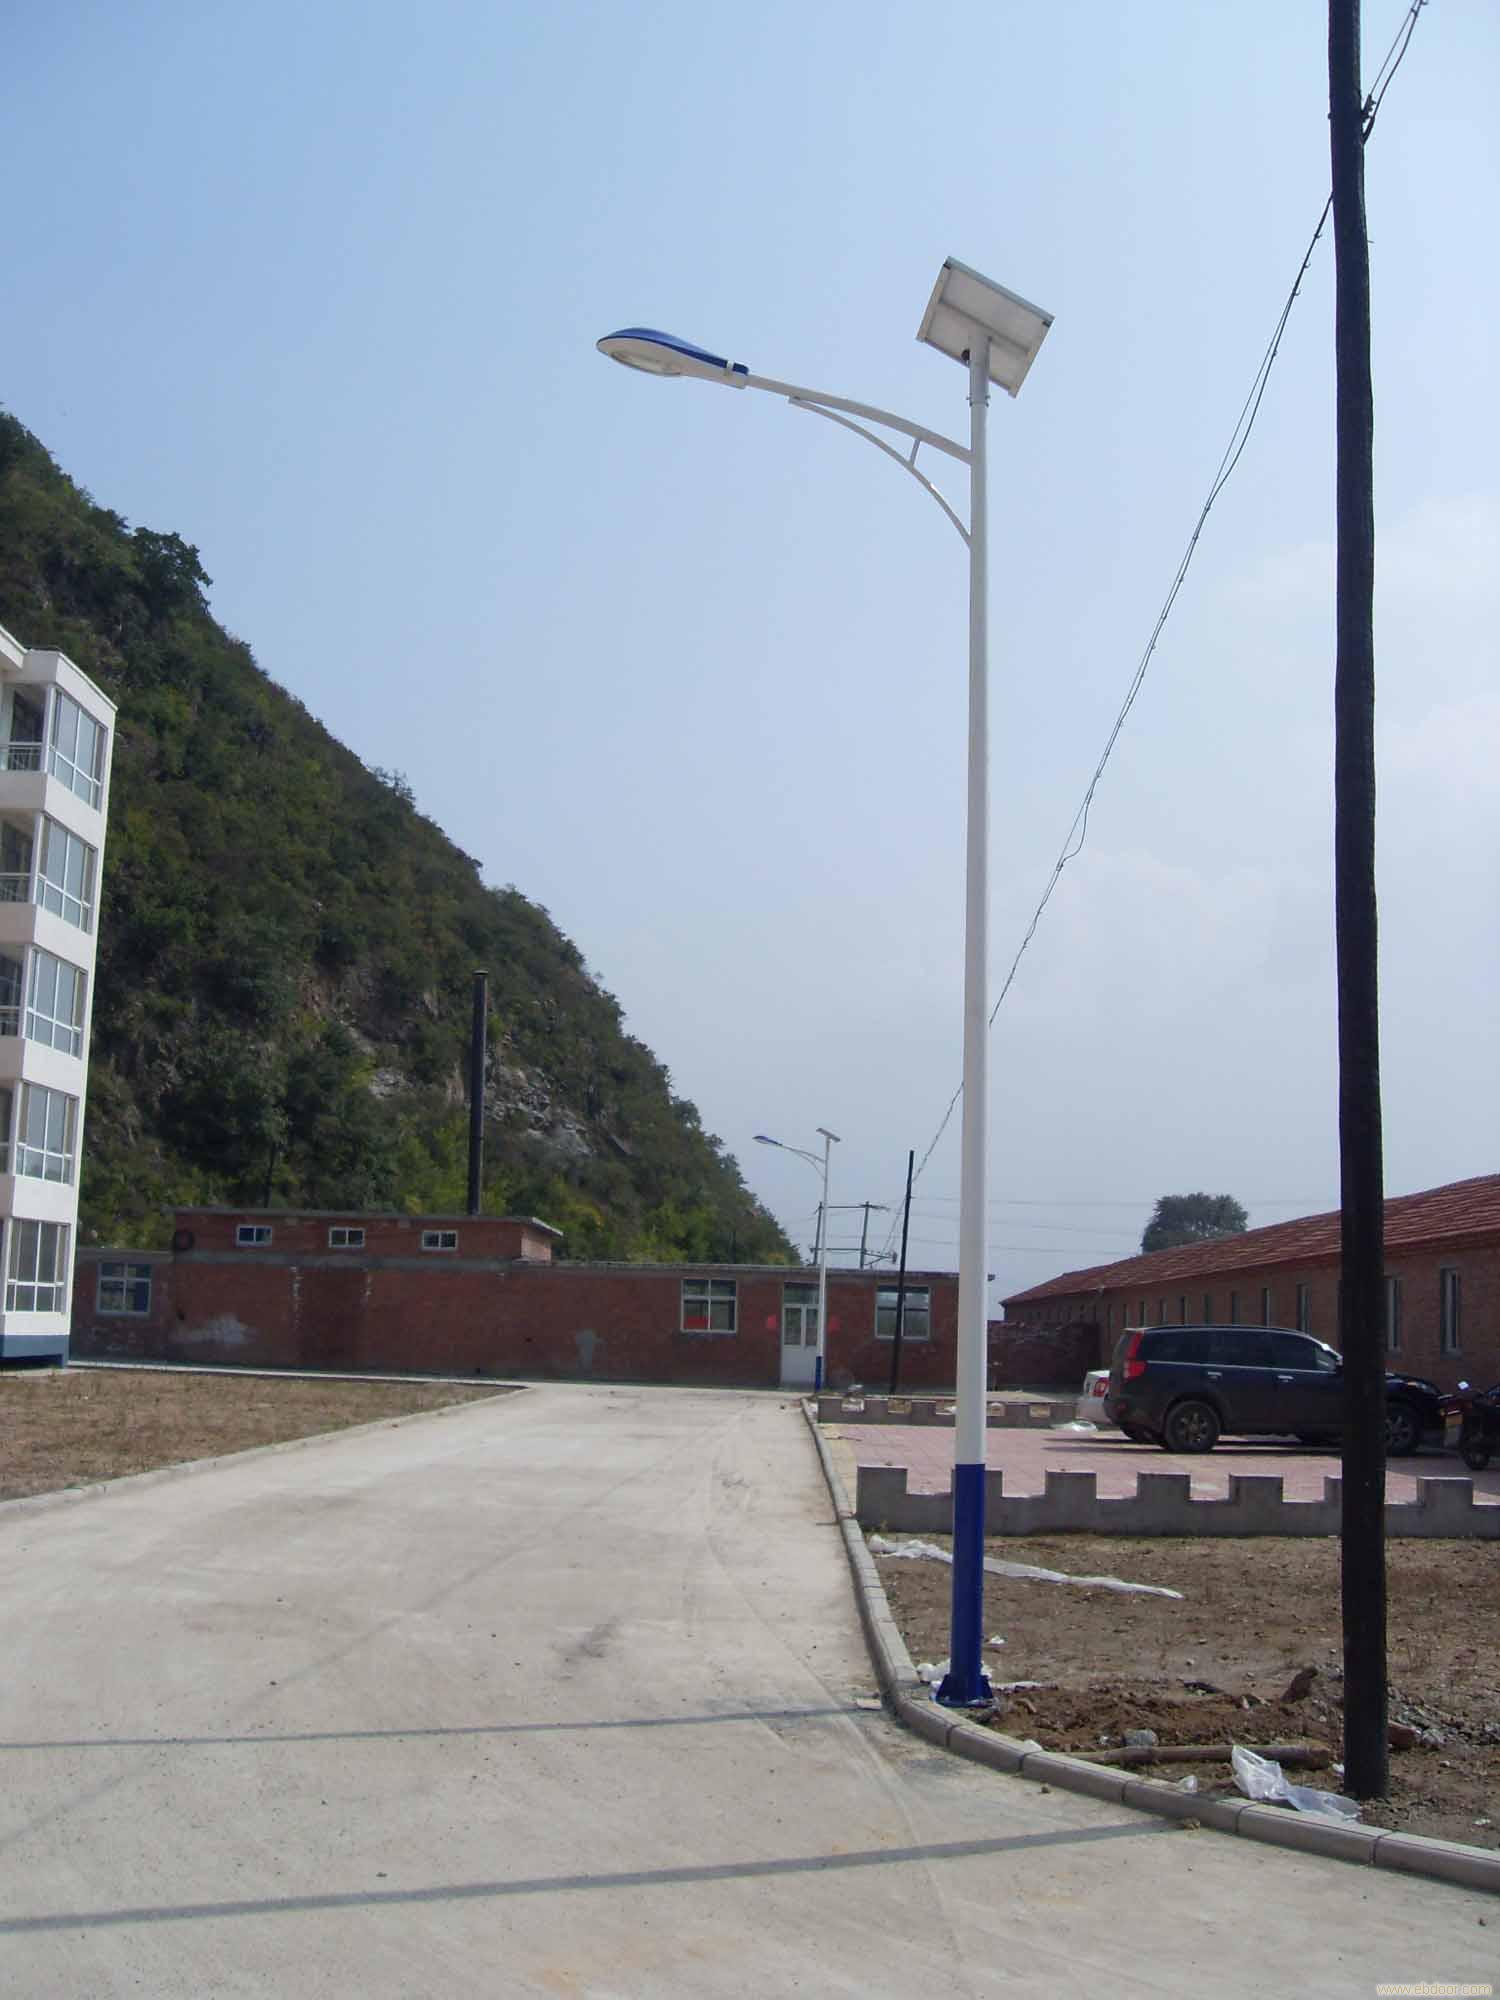 渭南韩城太阳能路灯/安装销售价格